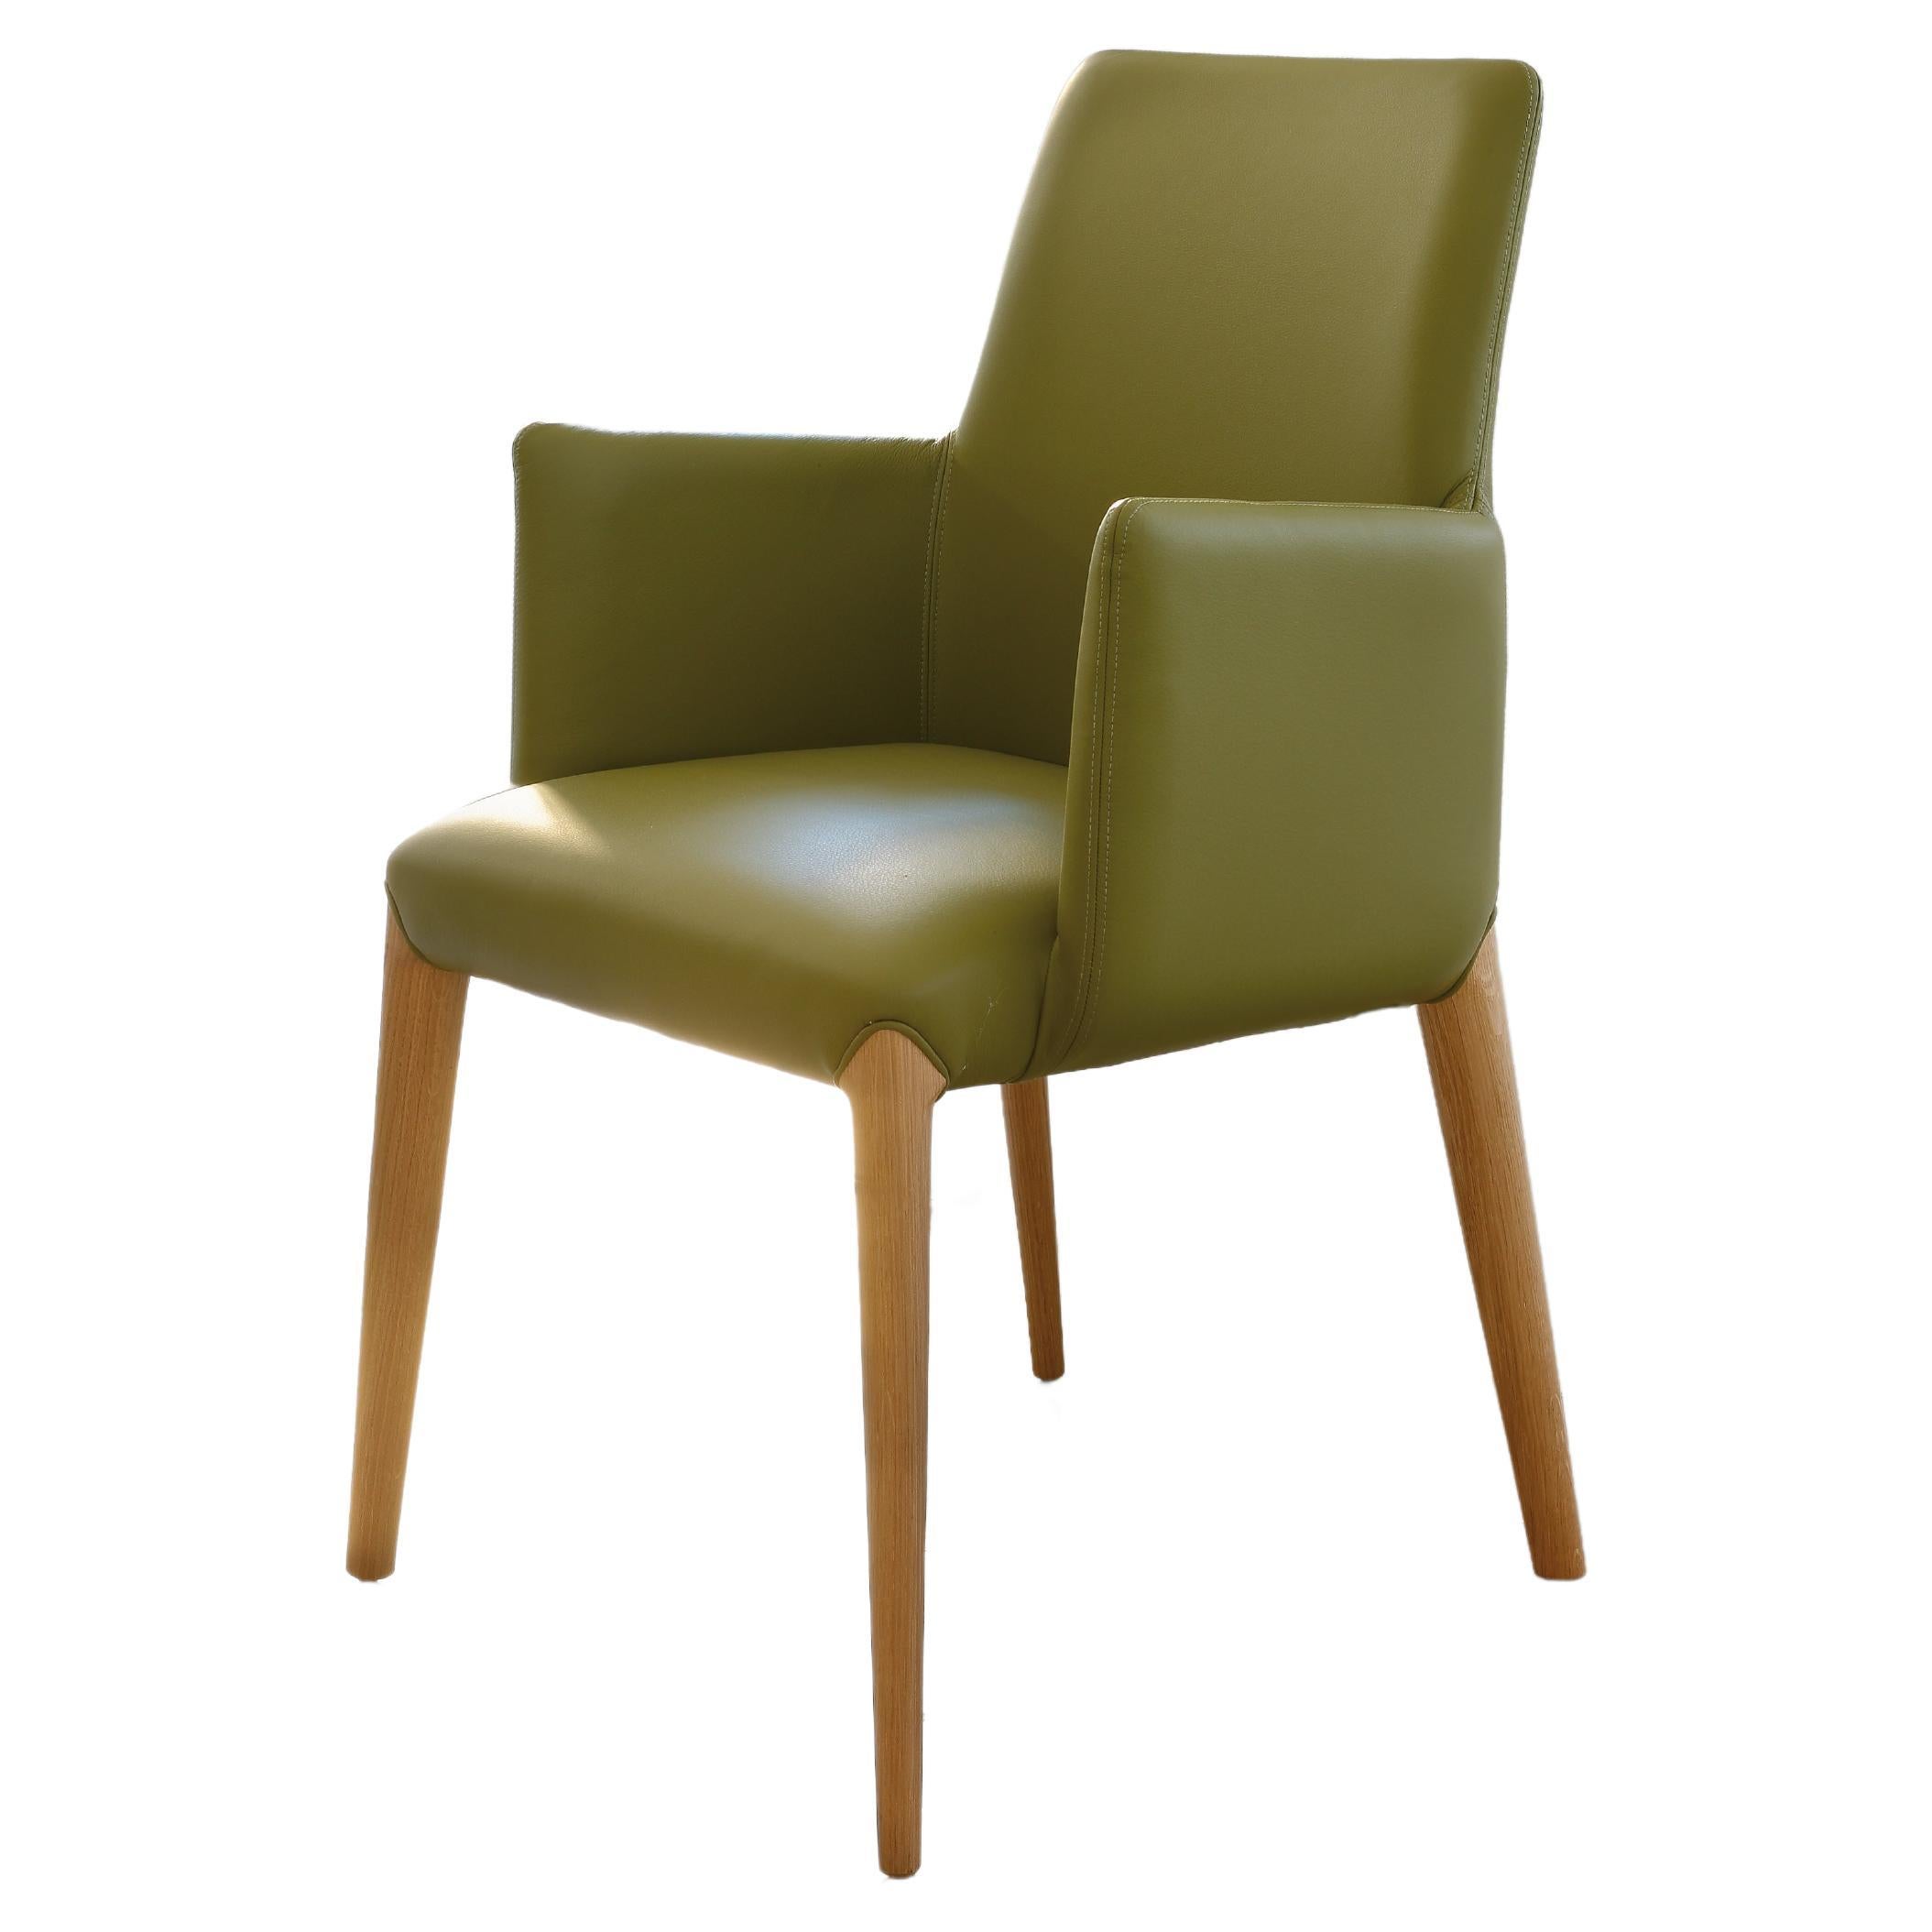 Der Stuhl Ines ist ein ausgezeichnetes italienisches Fabrikat.
Der Rahmen aus Massivholz wird von Hand gebogen und mit Geschick bearbeitet.
Gemalt Farbe Nussbaum oder Eiche.
Die Polsterung ist weich, bequem und gleichzeitig langlebig, das Leder und